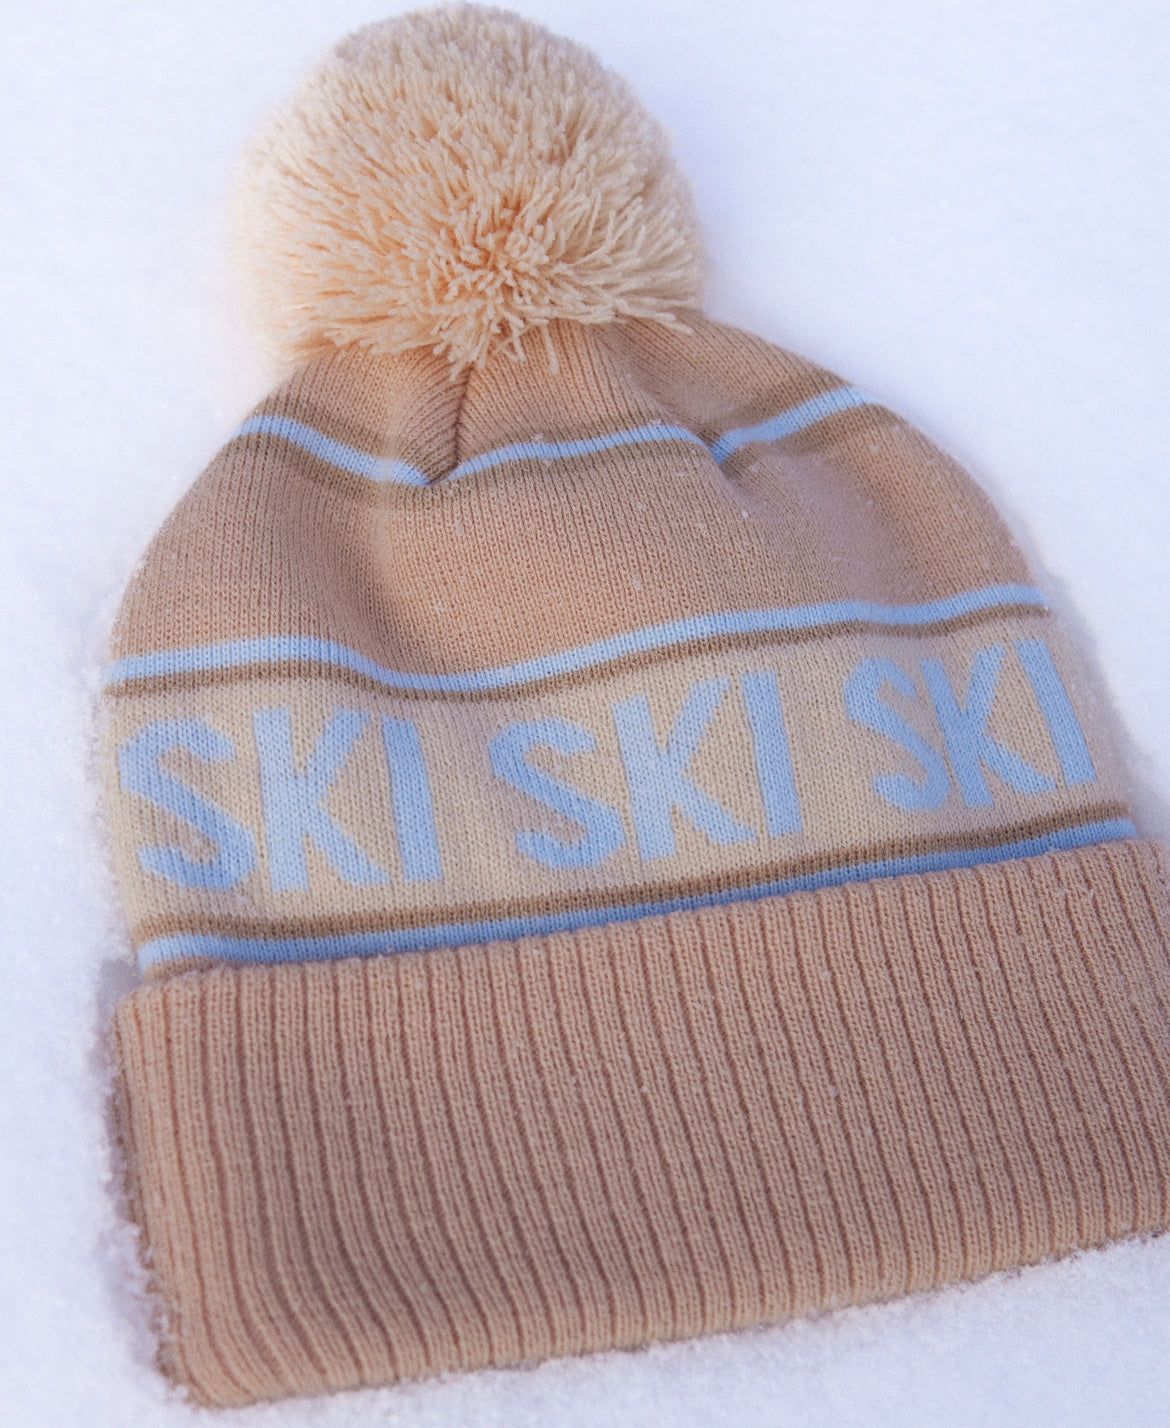 Retro SKI - Beanie / Winter hat